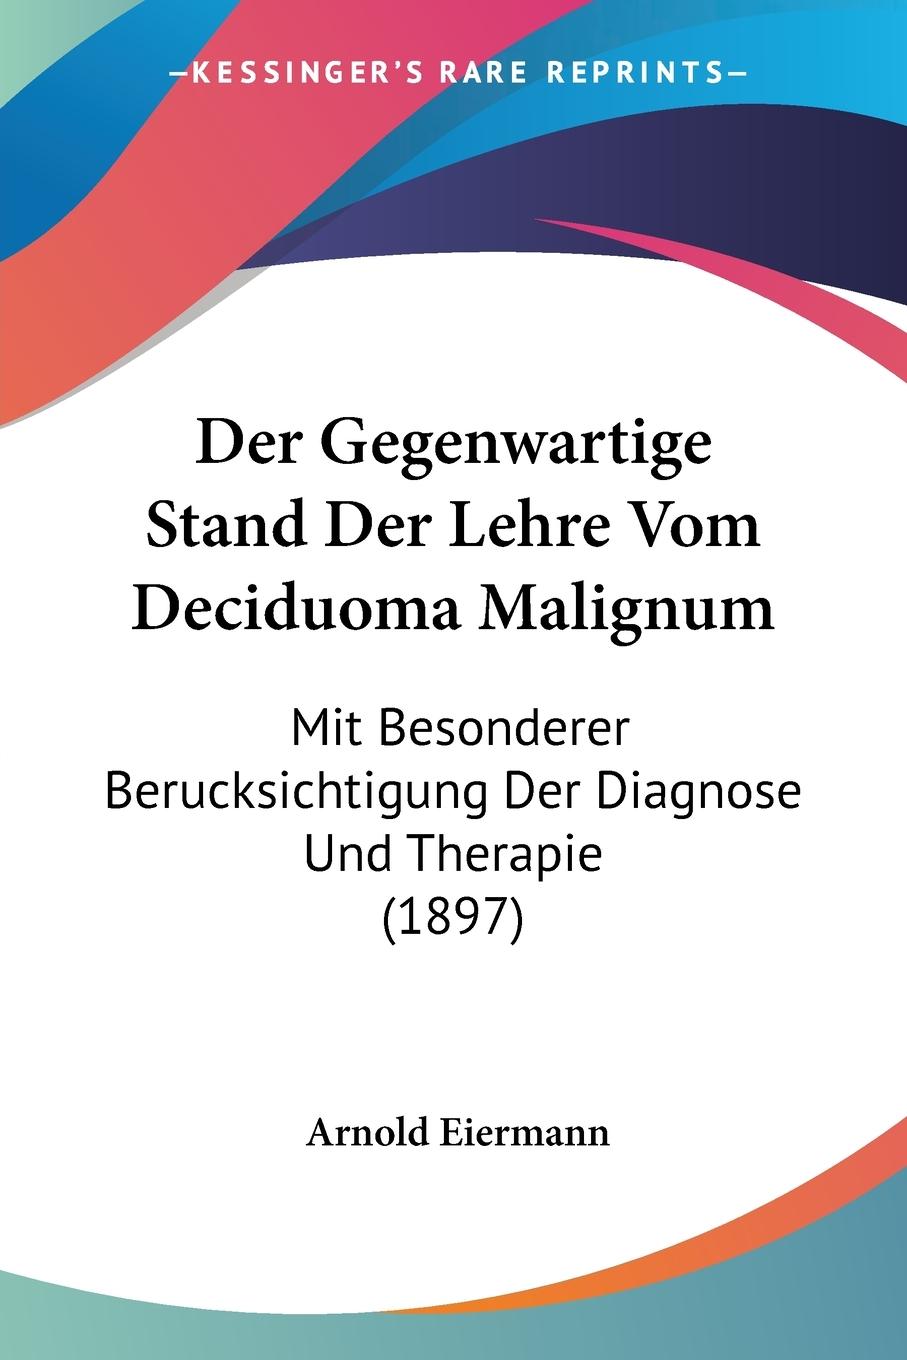 Der Gegenwartige Stand Der Lehre Vom Deciduoma Malignum - Eiermann, Arnold